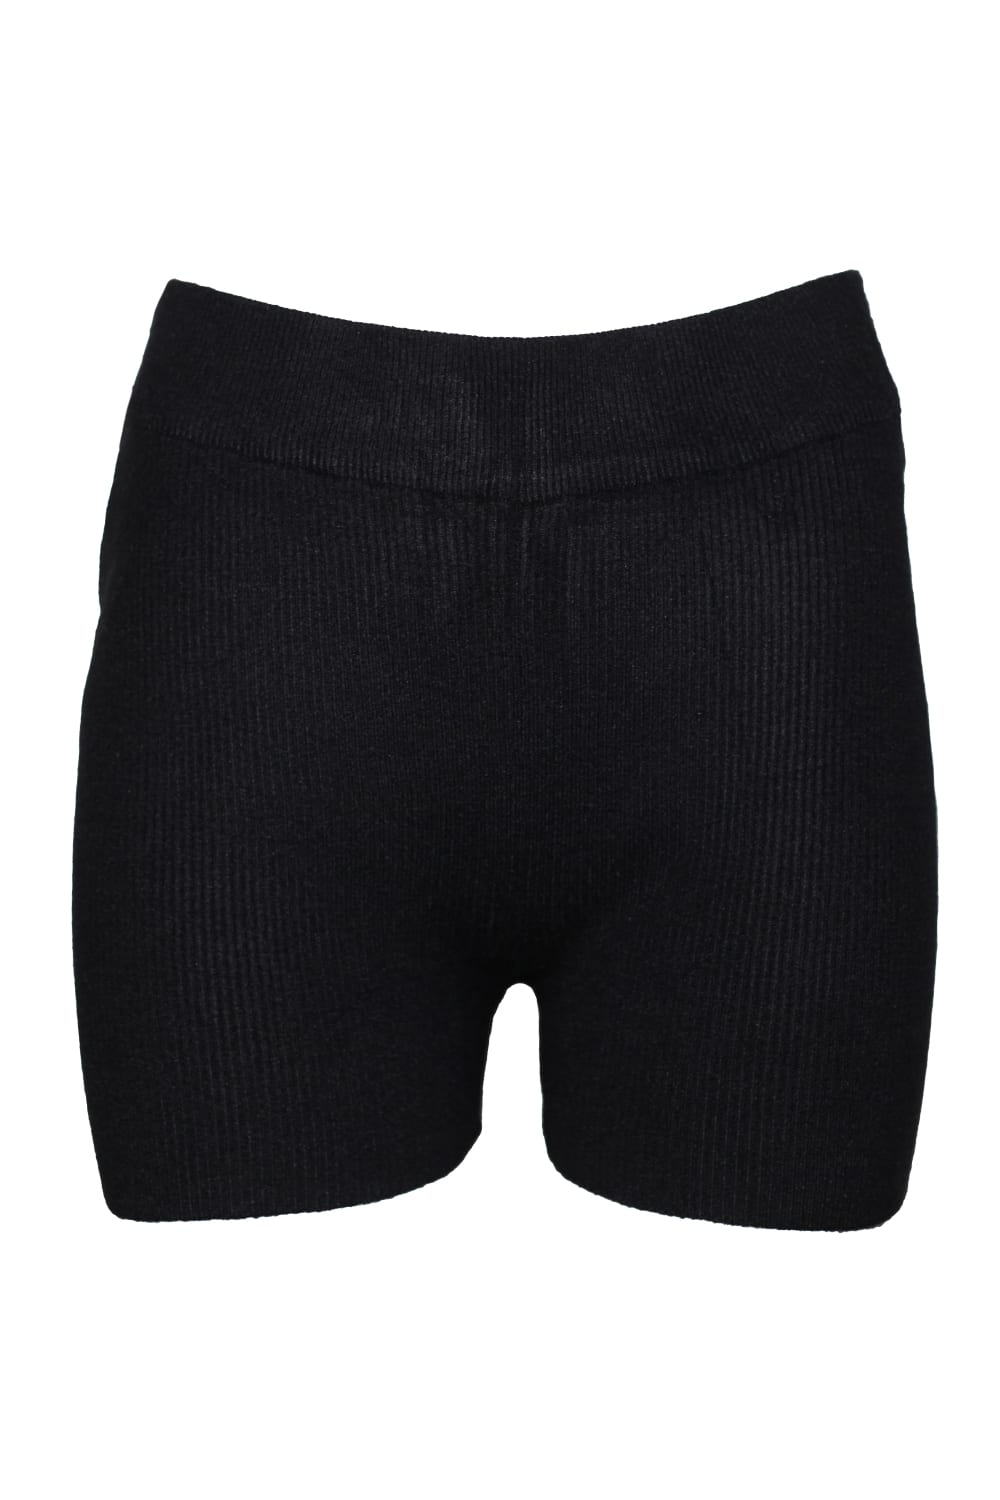 Brave Soul Womens/Ladies Rib Knit Shorts (Black)